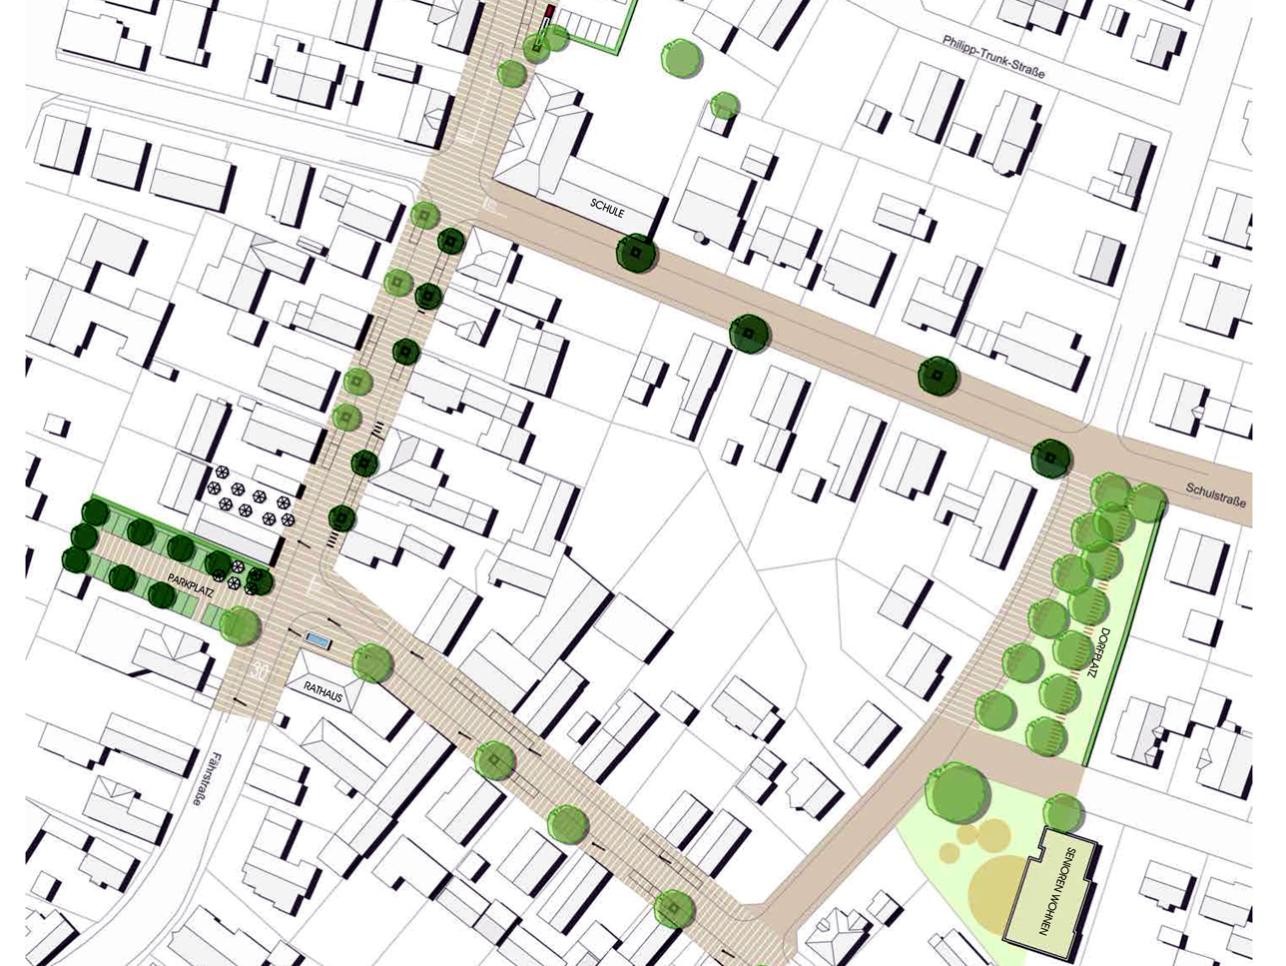 Plan du nouveau centre de Plittersdorf avec les rues, les maisons et les arbres